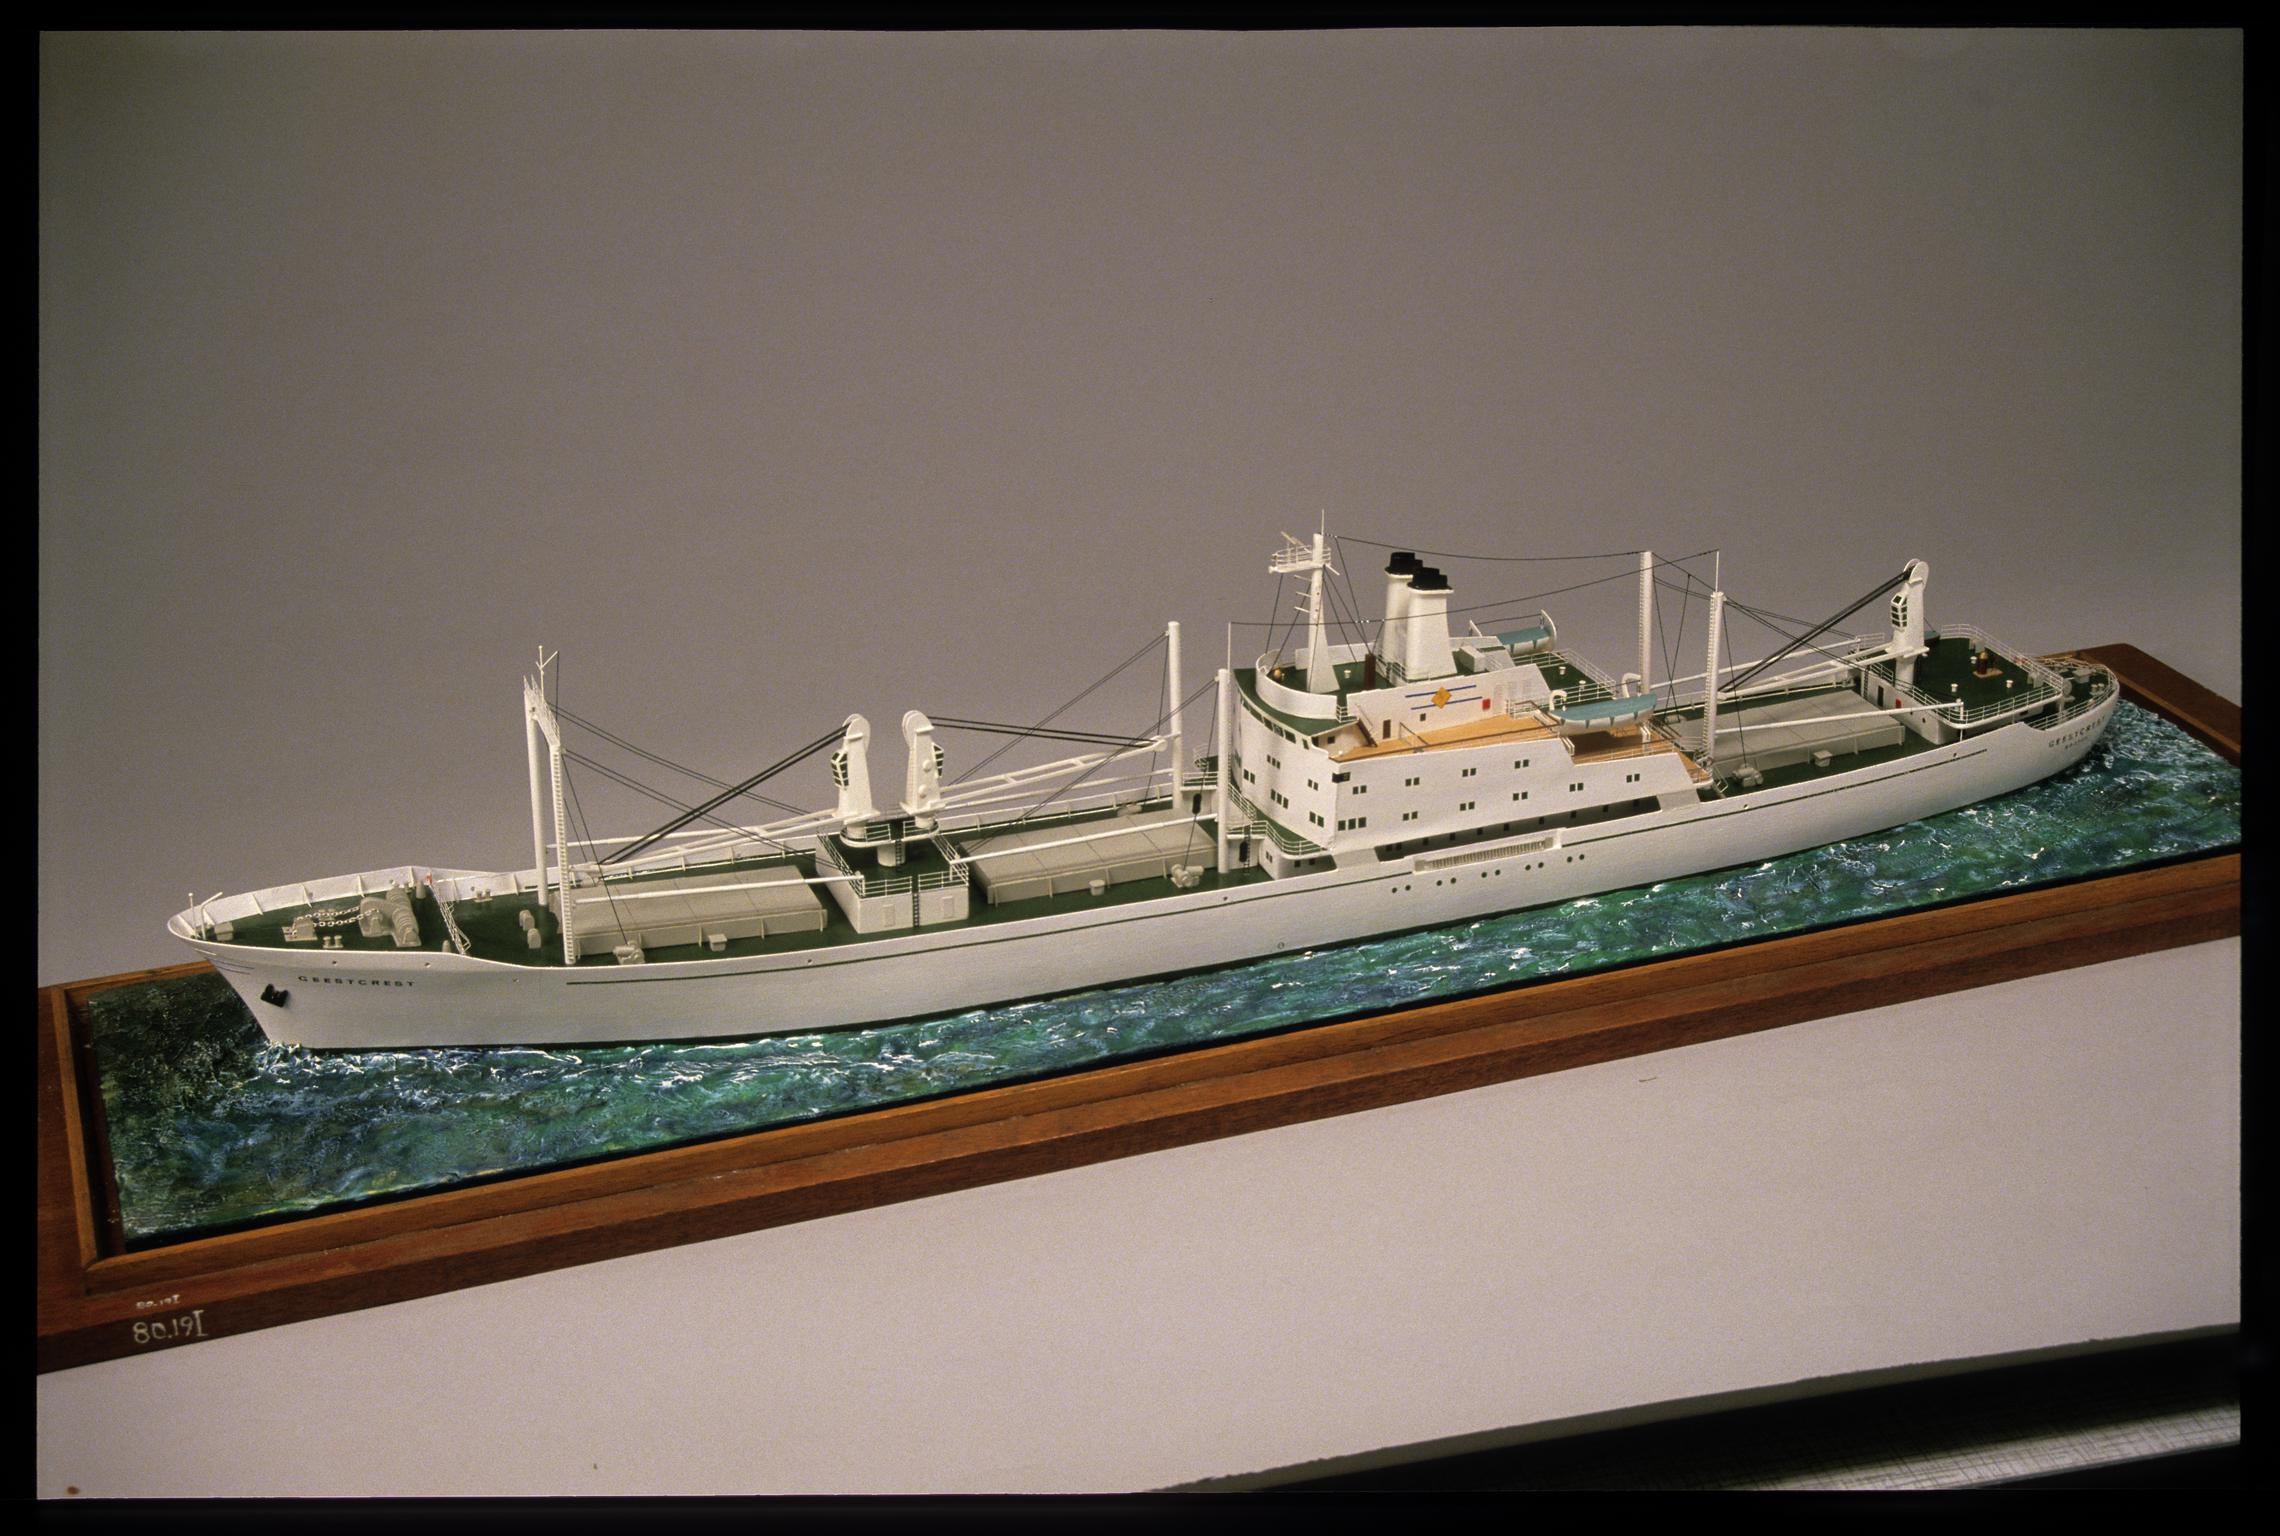 M.V. GEESTCREST, full hull ship model